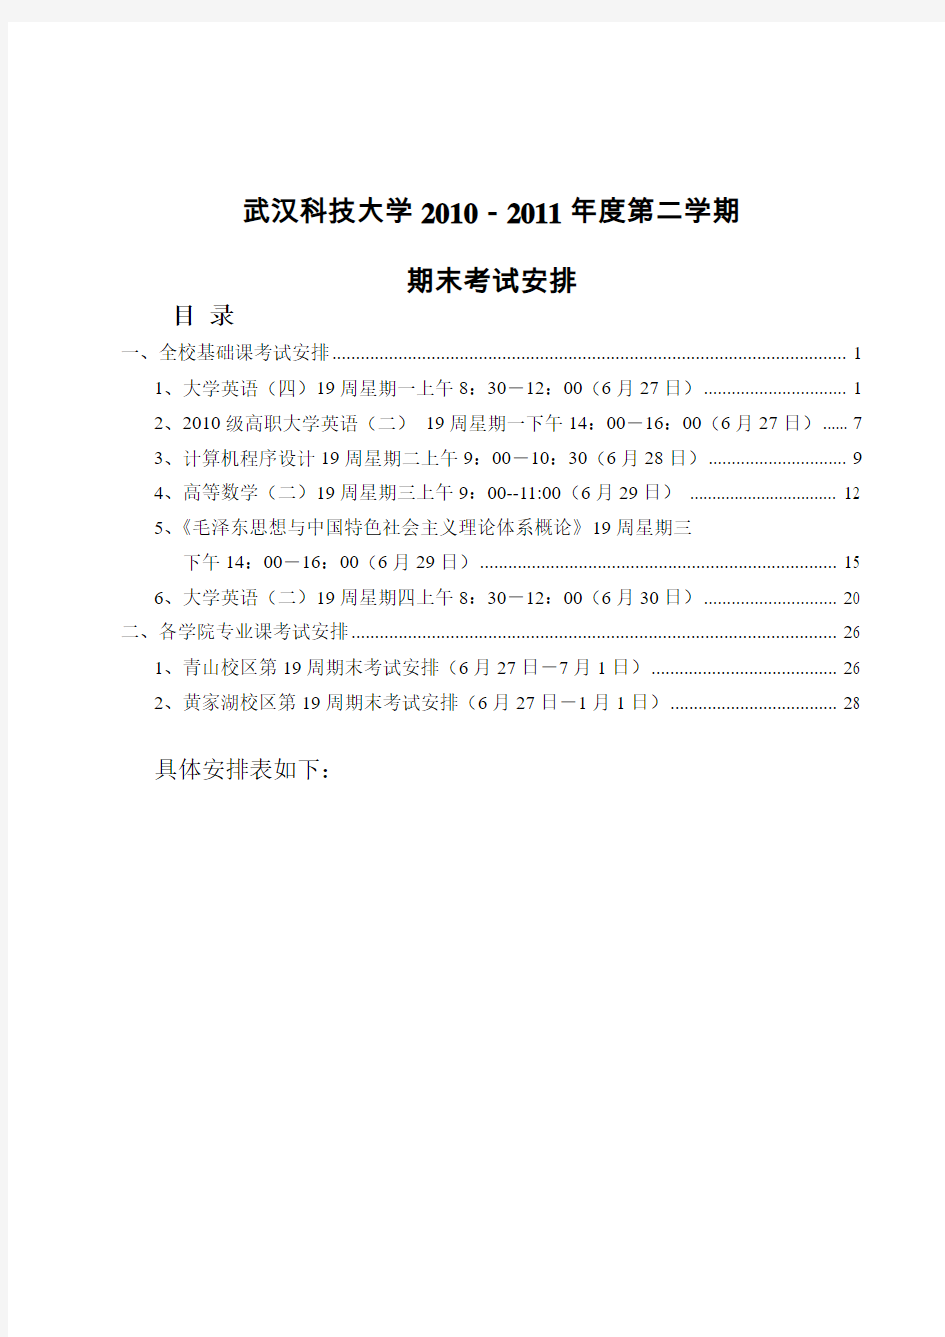 武汉科技大学2010-2011年度第二学期期末考试安排